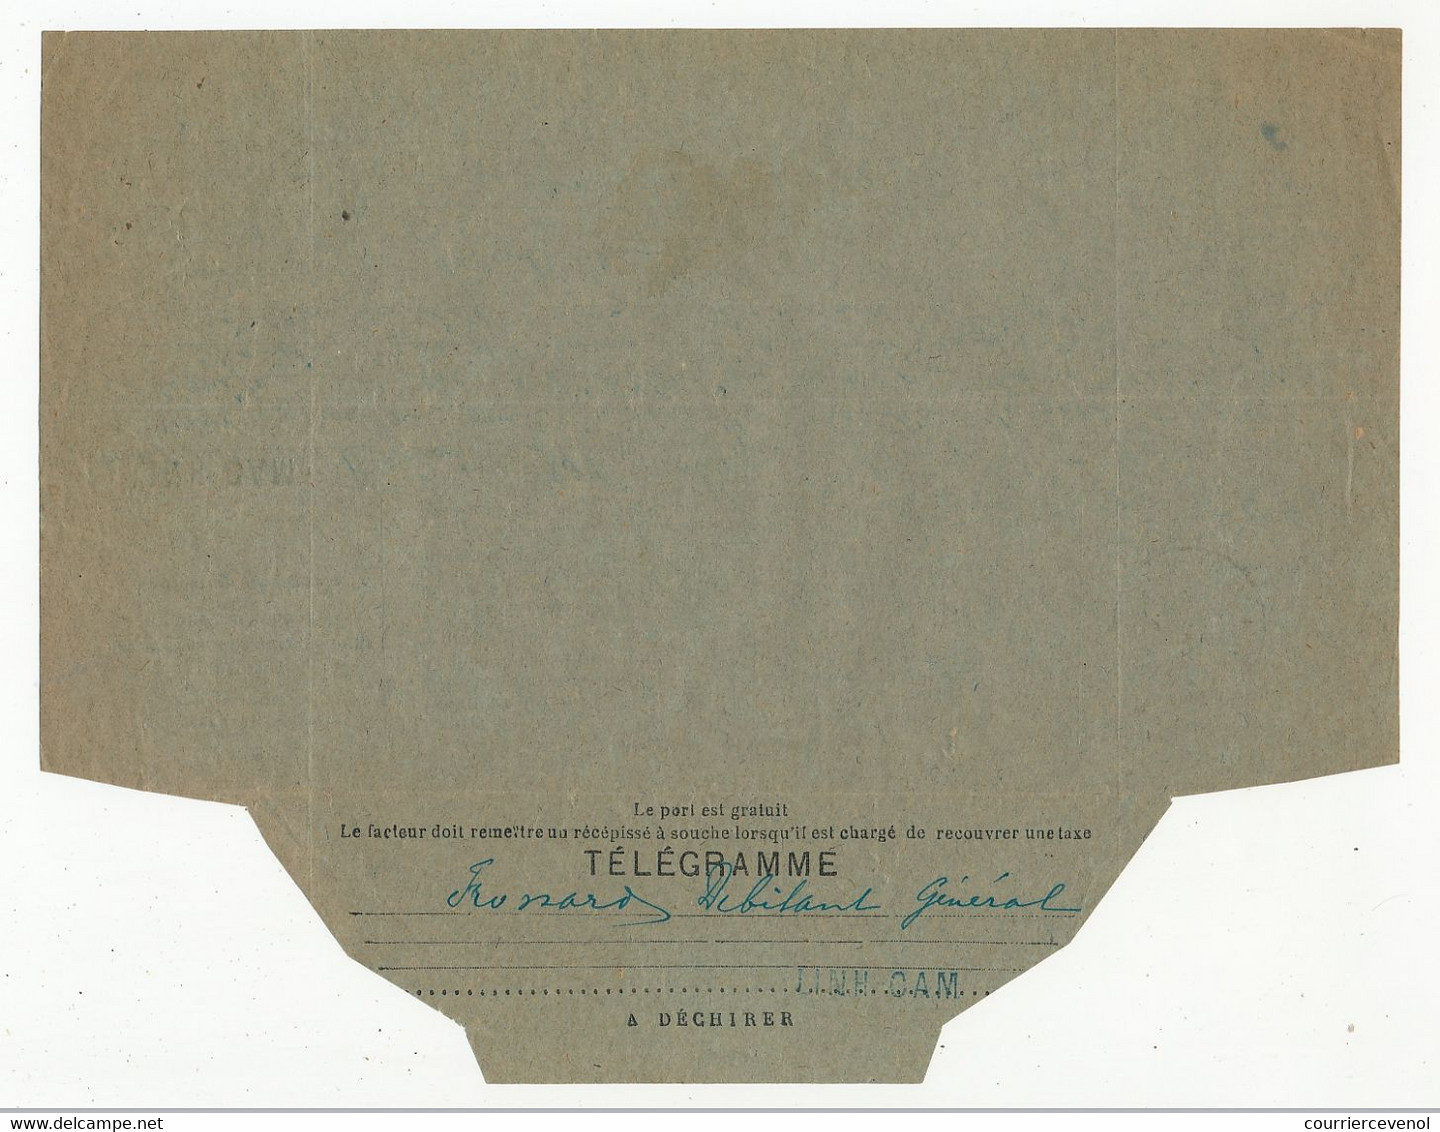 ANNAM - Deux Télégrammes Avec Cachet à Date Et Griffe Lin "LINH-CAM ANNAM" 1929 Et 1930 - Covers & Documents